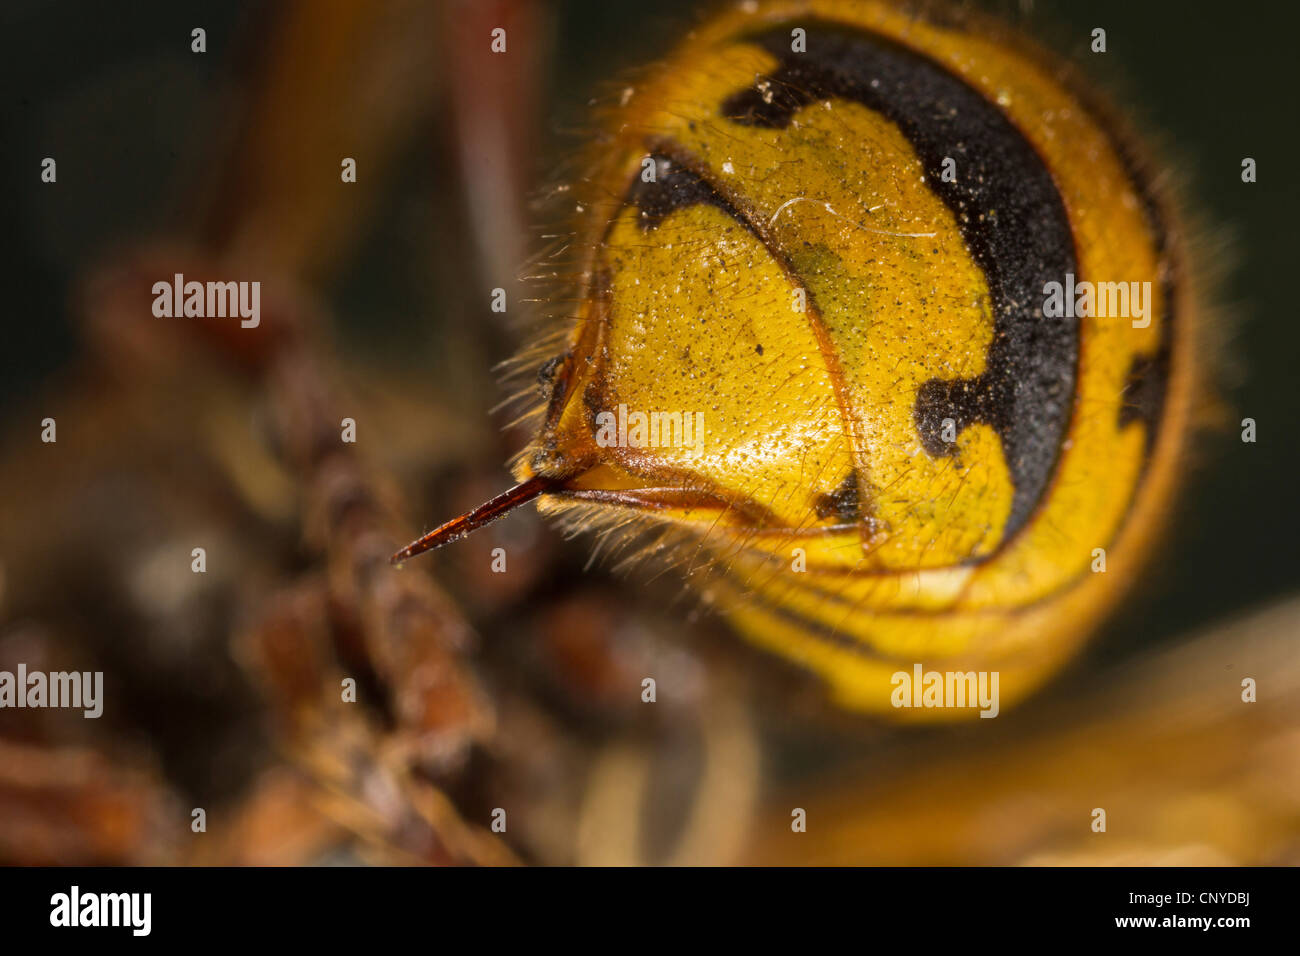 Hornet, brown, hornet hornet Européen (Vespa crabro), l'arrière-train avec poison sting Banque D'Images